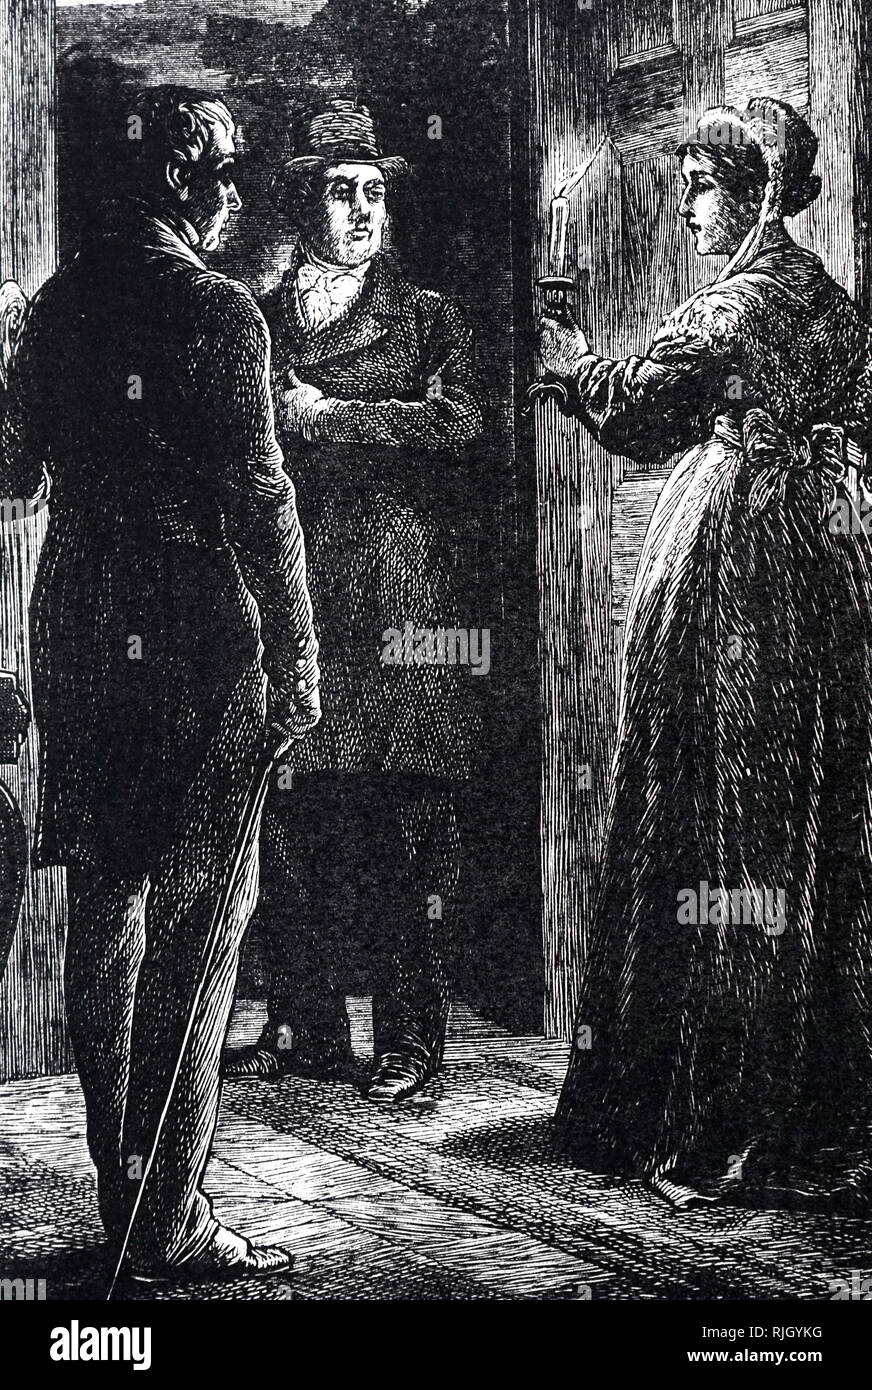 Eine Gravur, eine Dame an eine offene Tür, Leuchter in der Hand. Illustriert von John McL Ralston (1868-1889). Vom 19. Jahrhundert Stockfoto